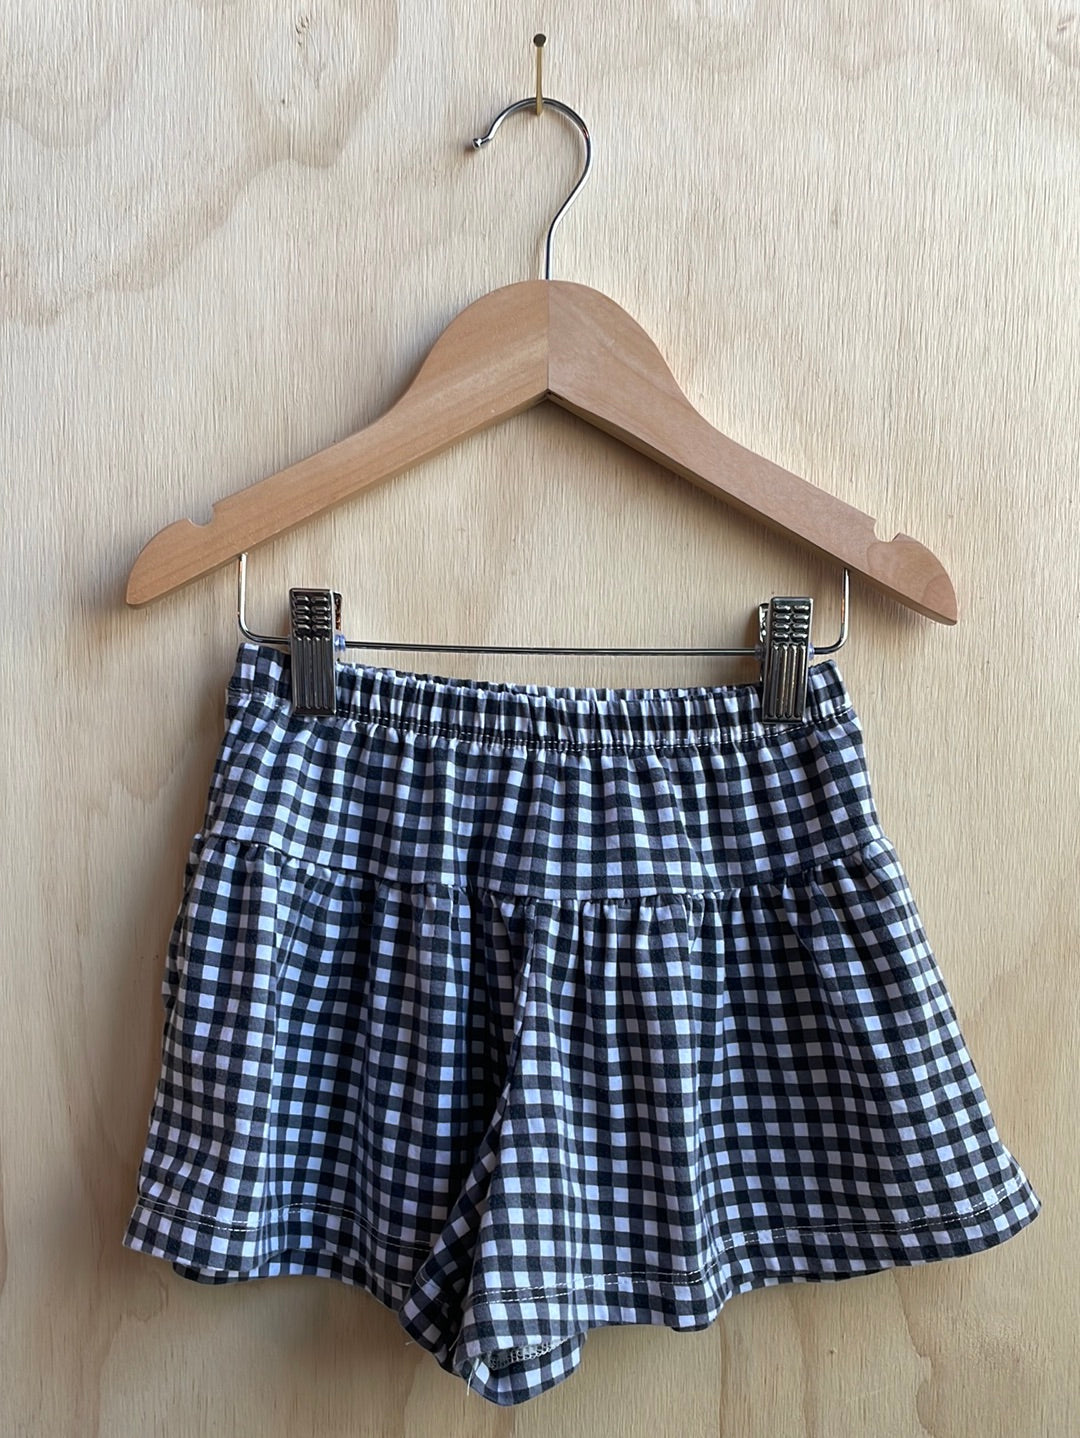 Kid’s Black and White Gingham shorts/skirt